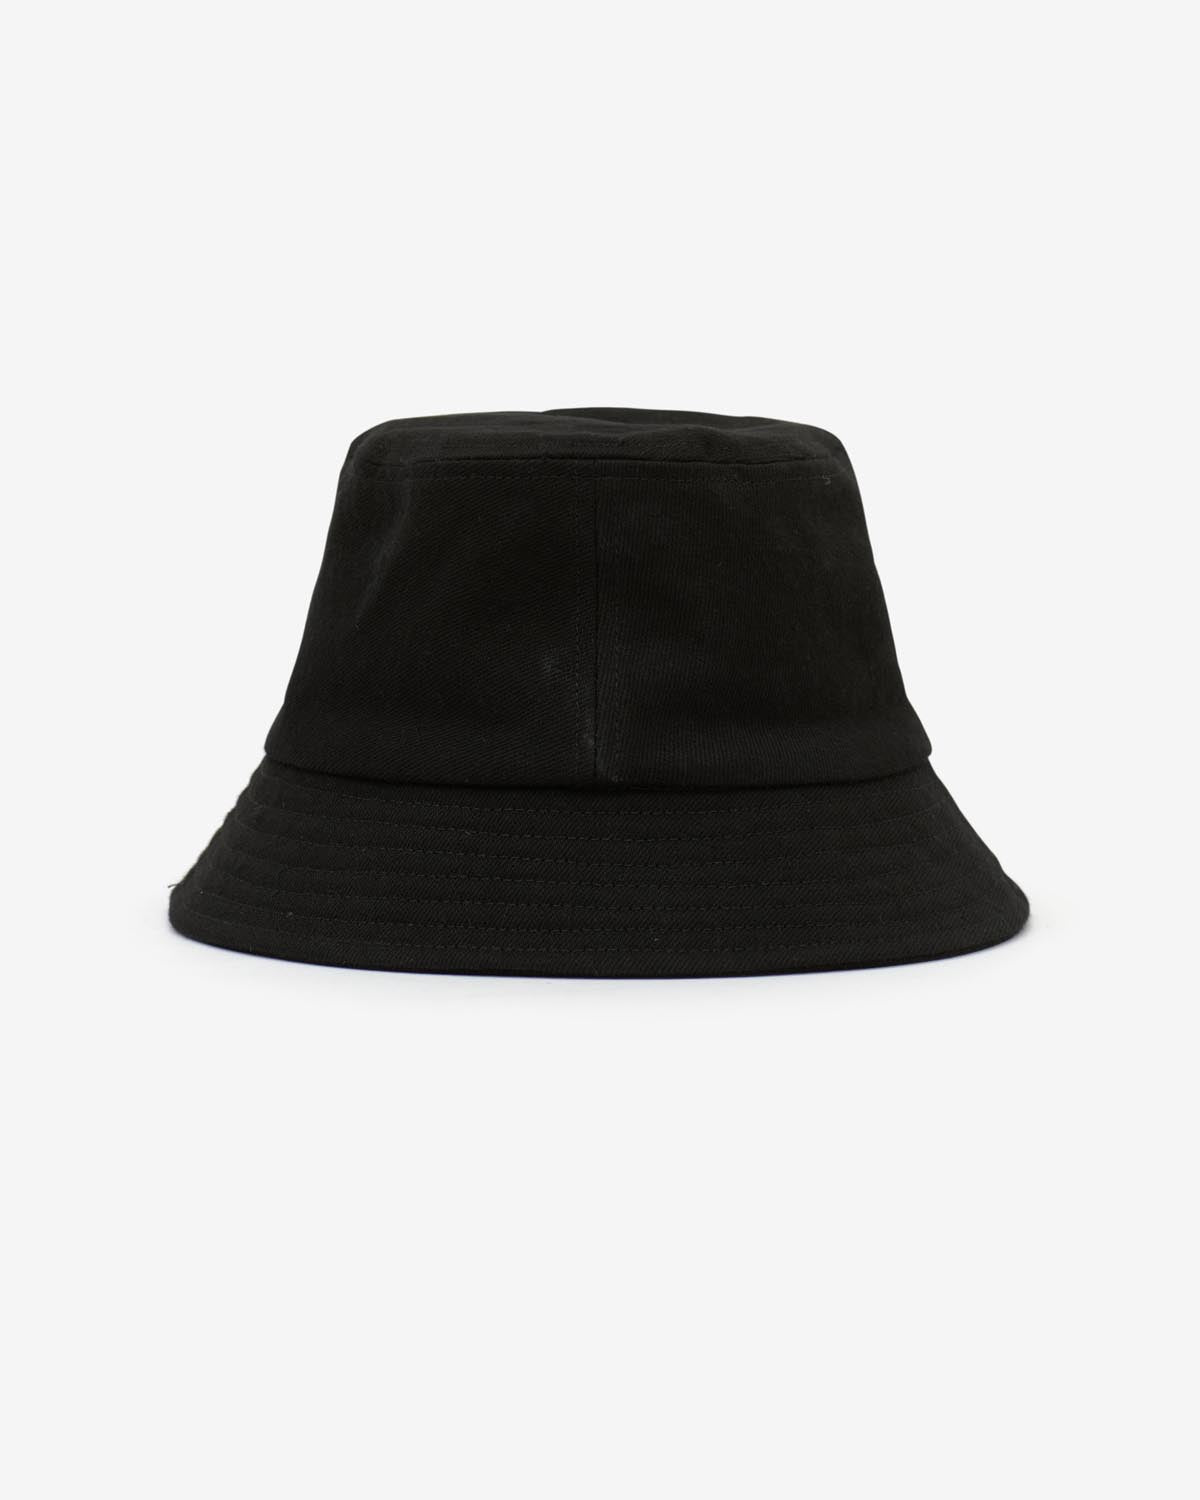 Sombrero haley Woman Black-black 3